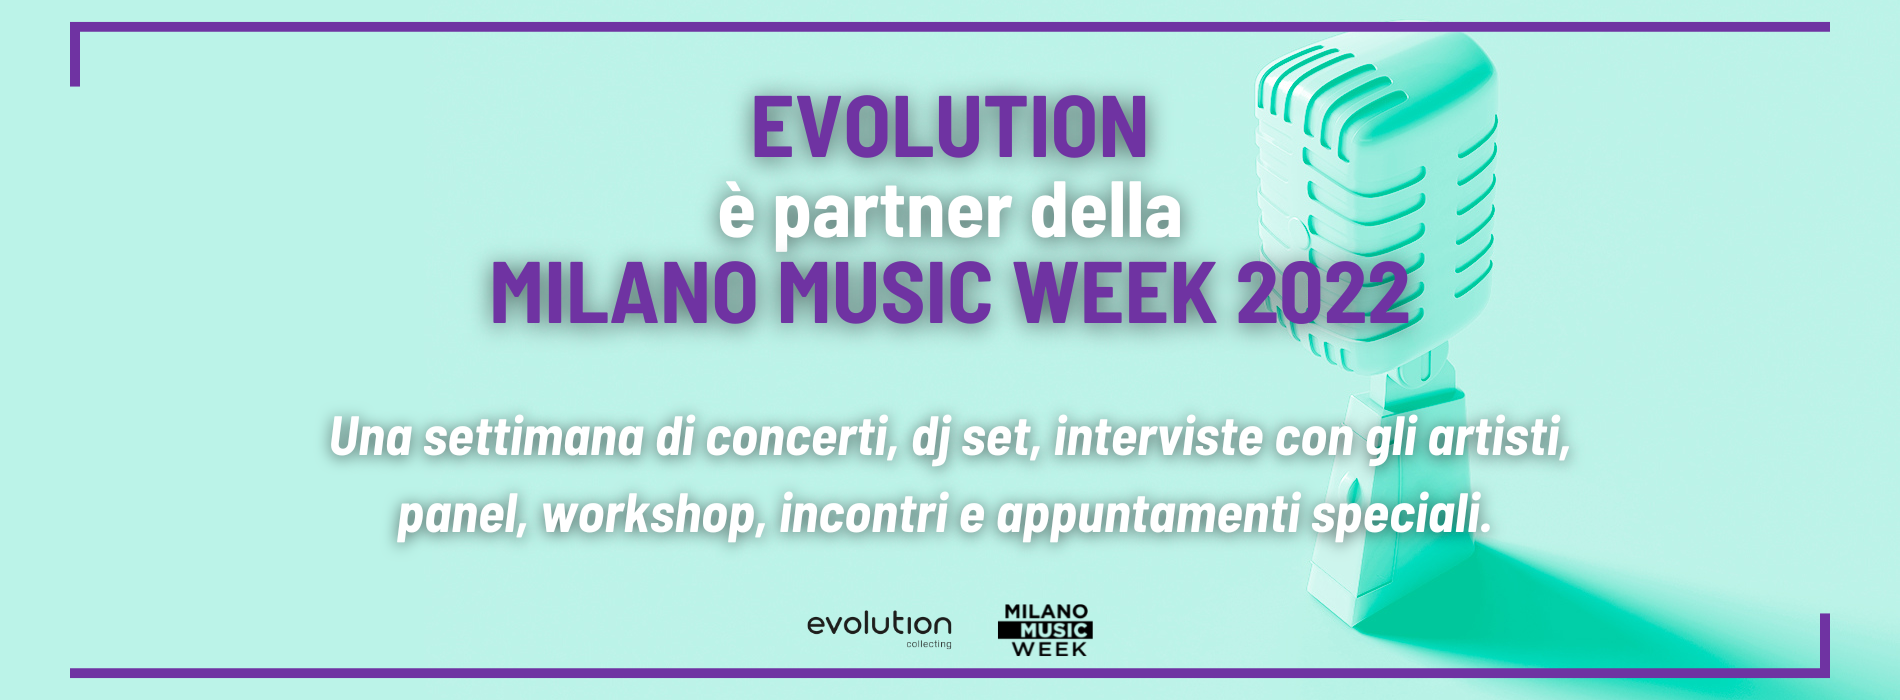 Evolution Collecting è partner della Milano Music Week 2022.